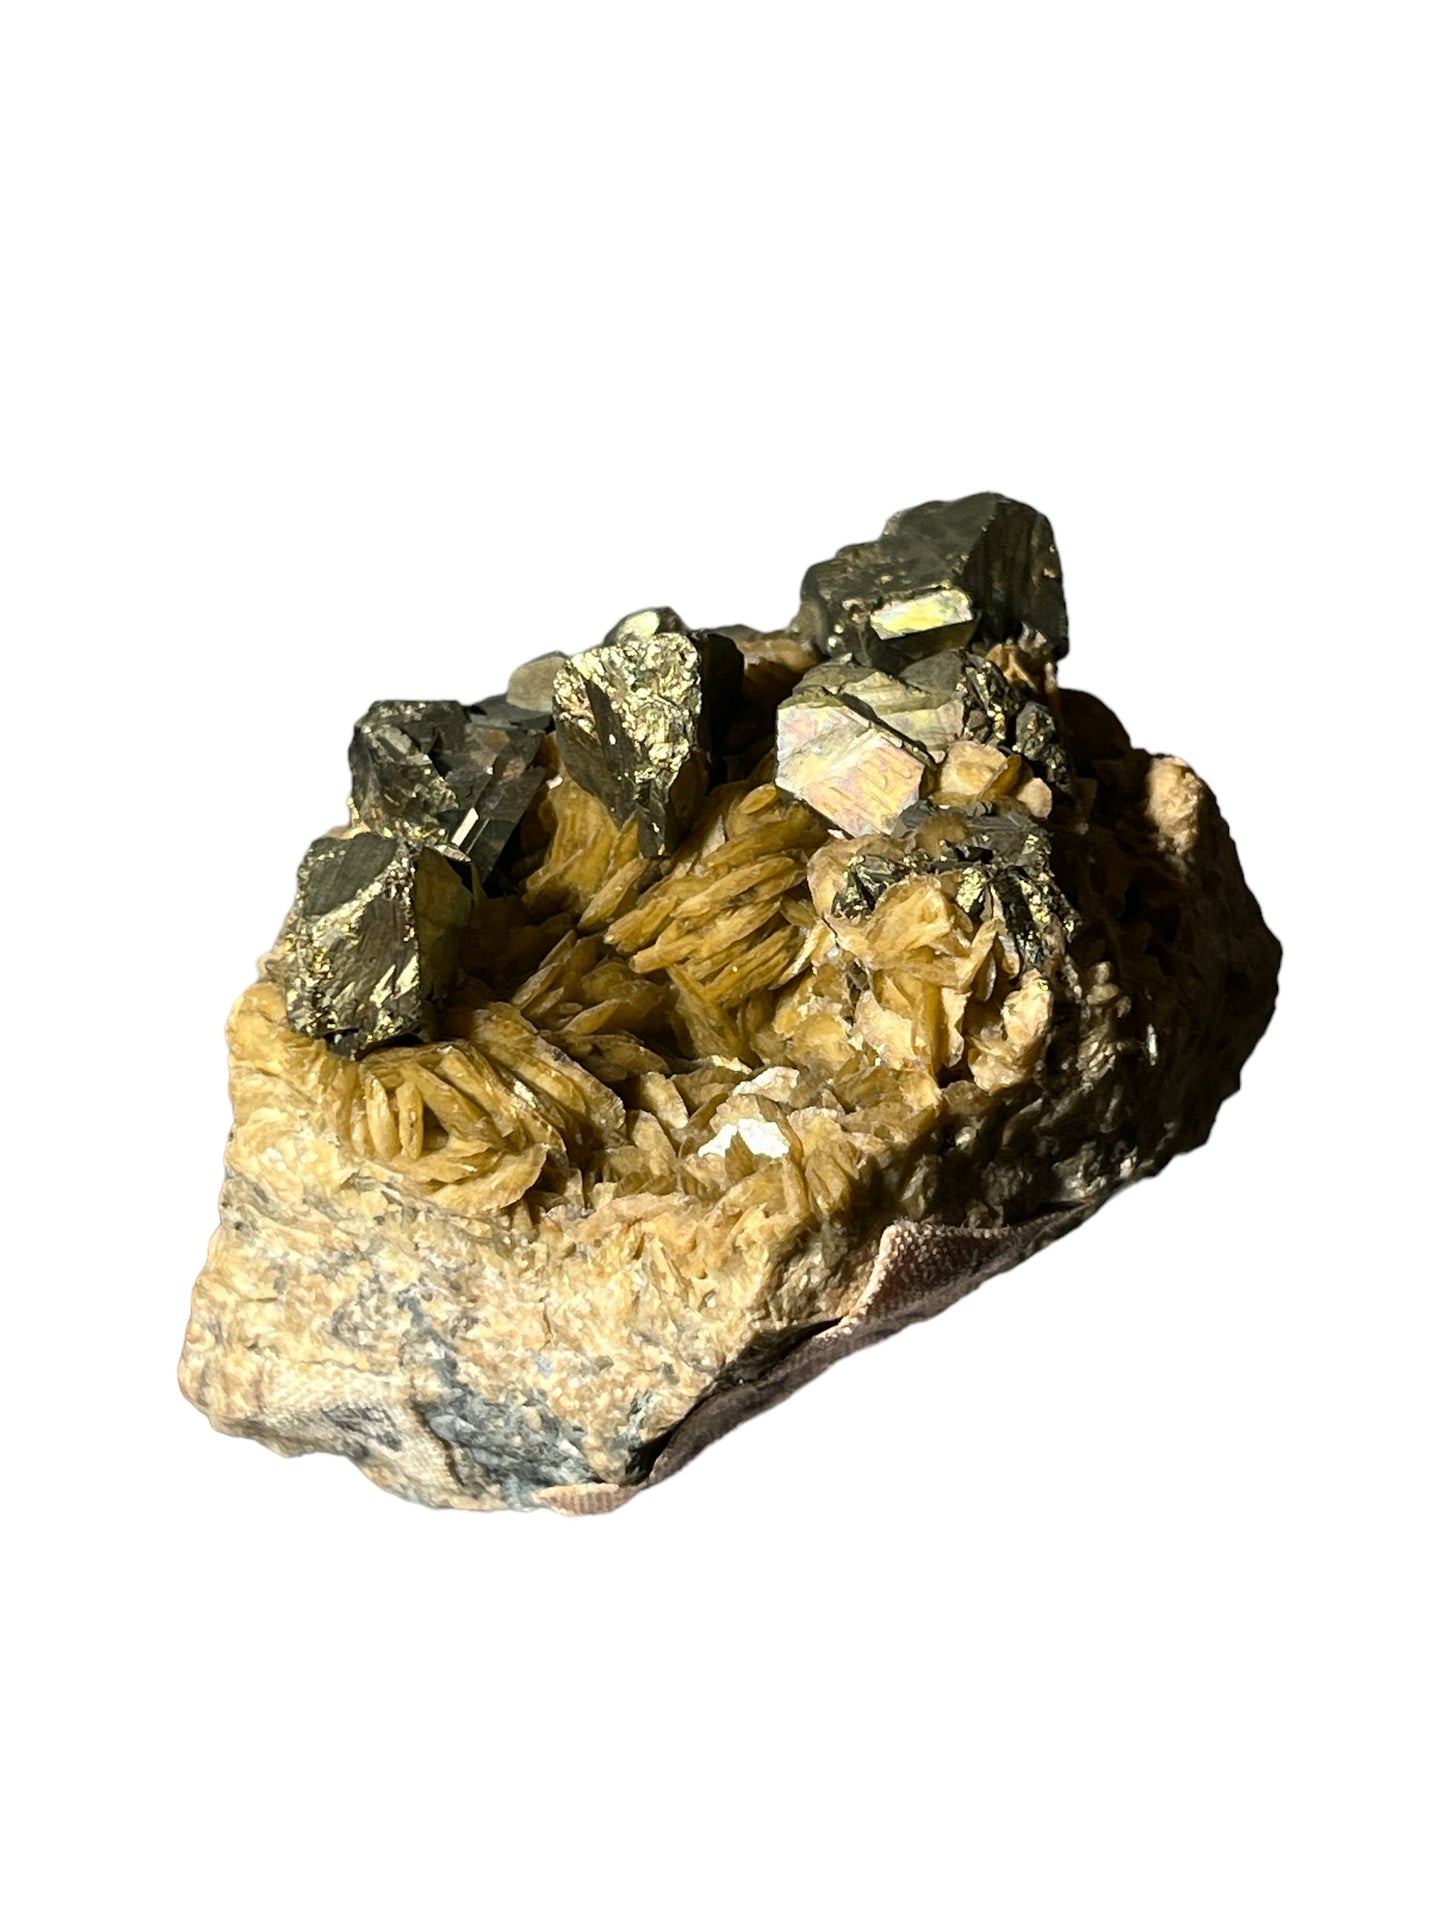 Chalcopyrite sur siderite Cornouailles XIXe siècle UK DB168